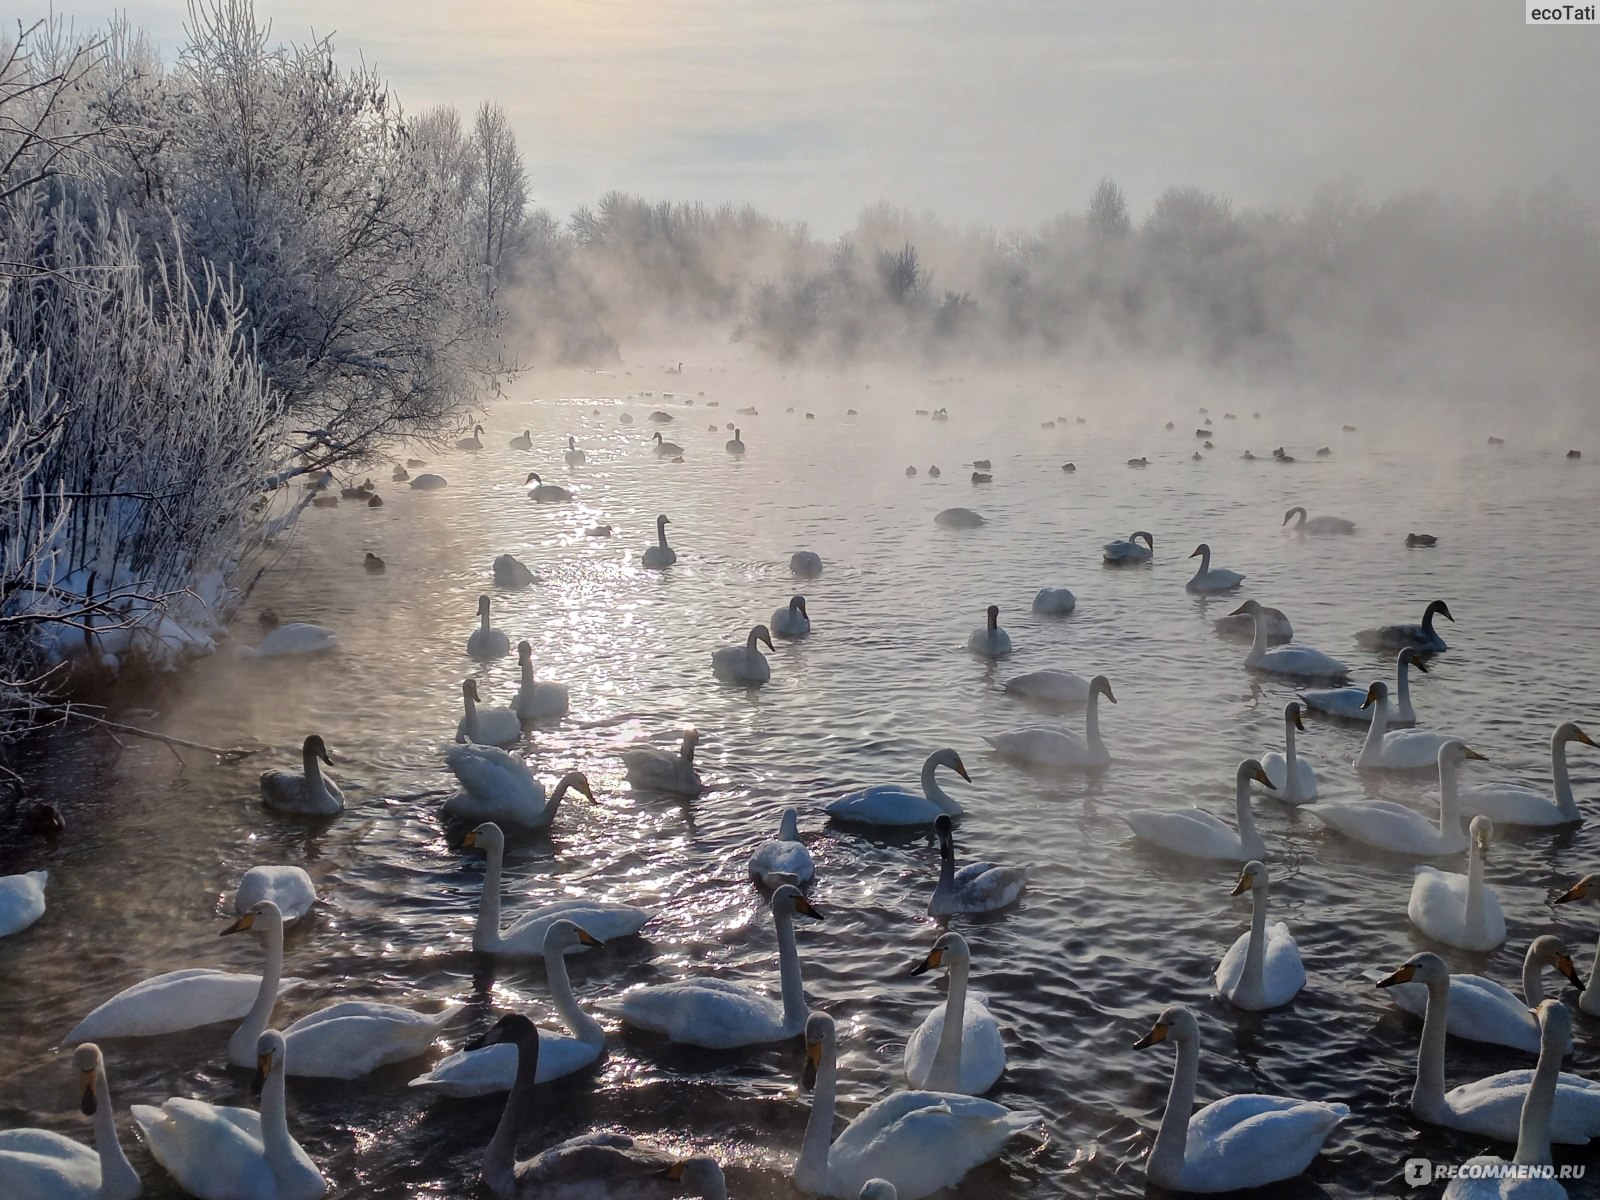 Лебединое озеро Алтай зимой драйв2